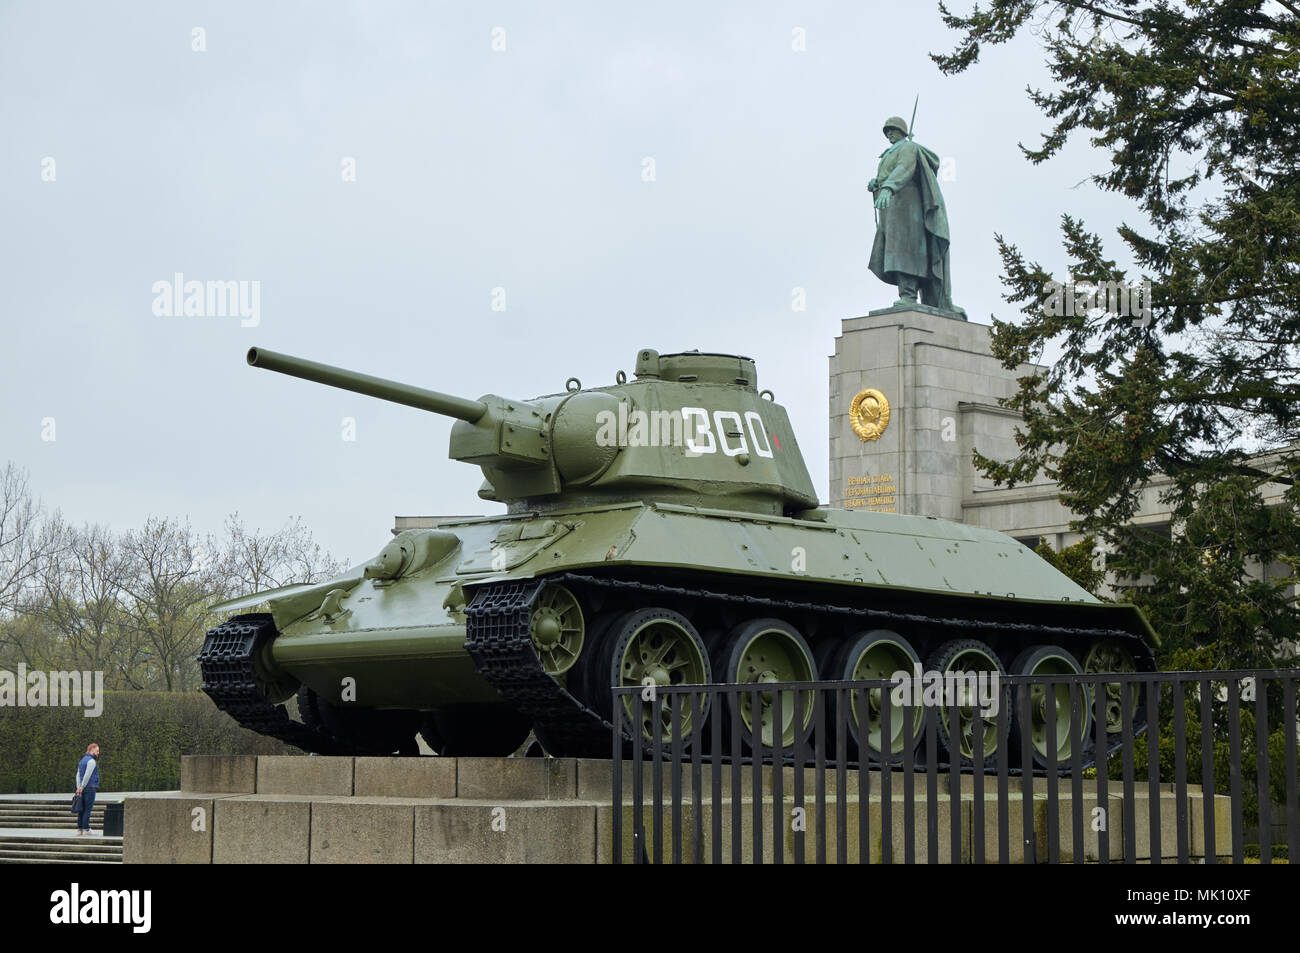 Berlino, Germania - 14 Aprile 2018: carro armato sovietico T-34 nella parte anteriore della statua del soldato sovietico alla guerra sovietica Memorial Tiergarten di Berlino, Germania Foto Stock